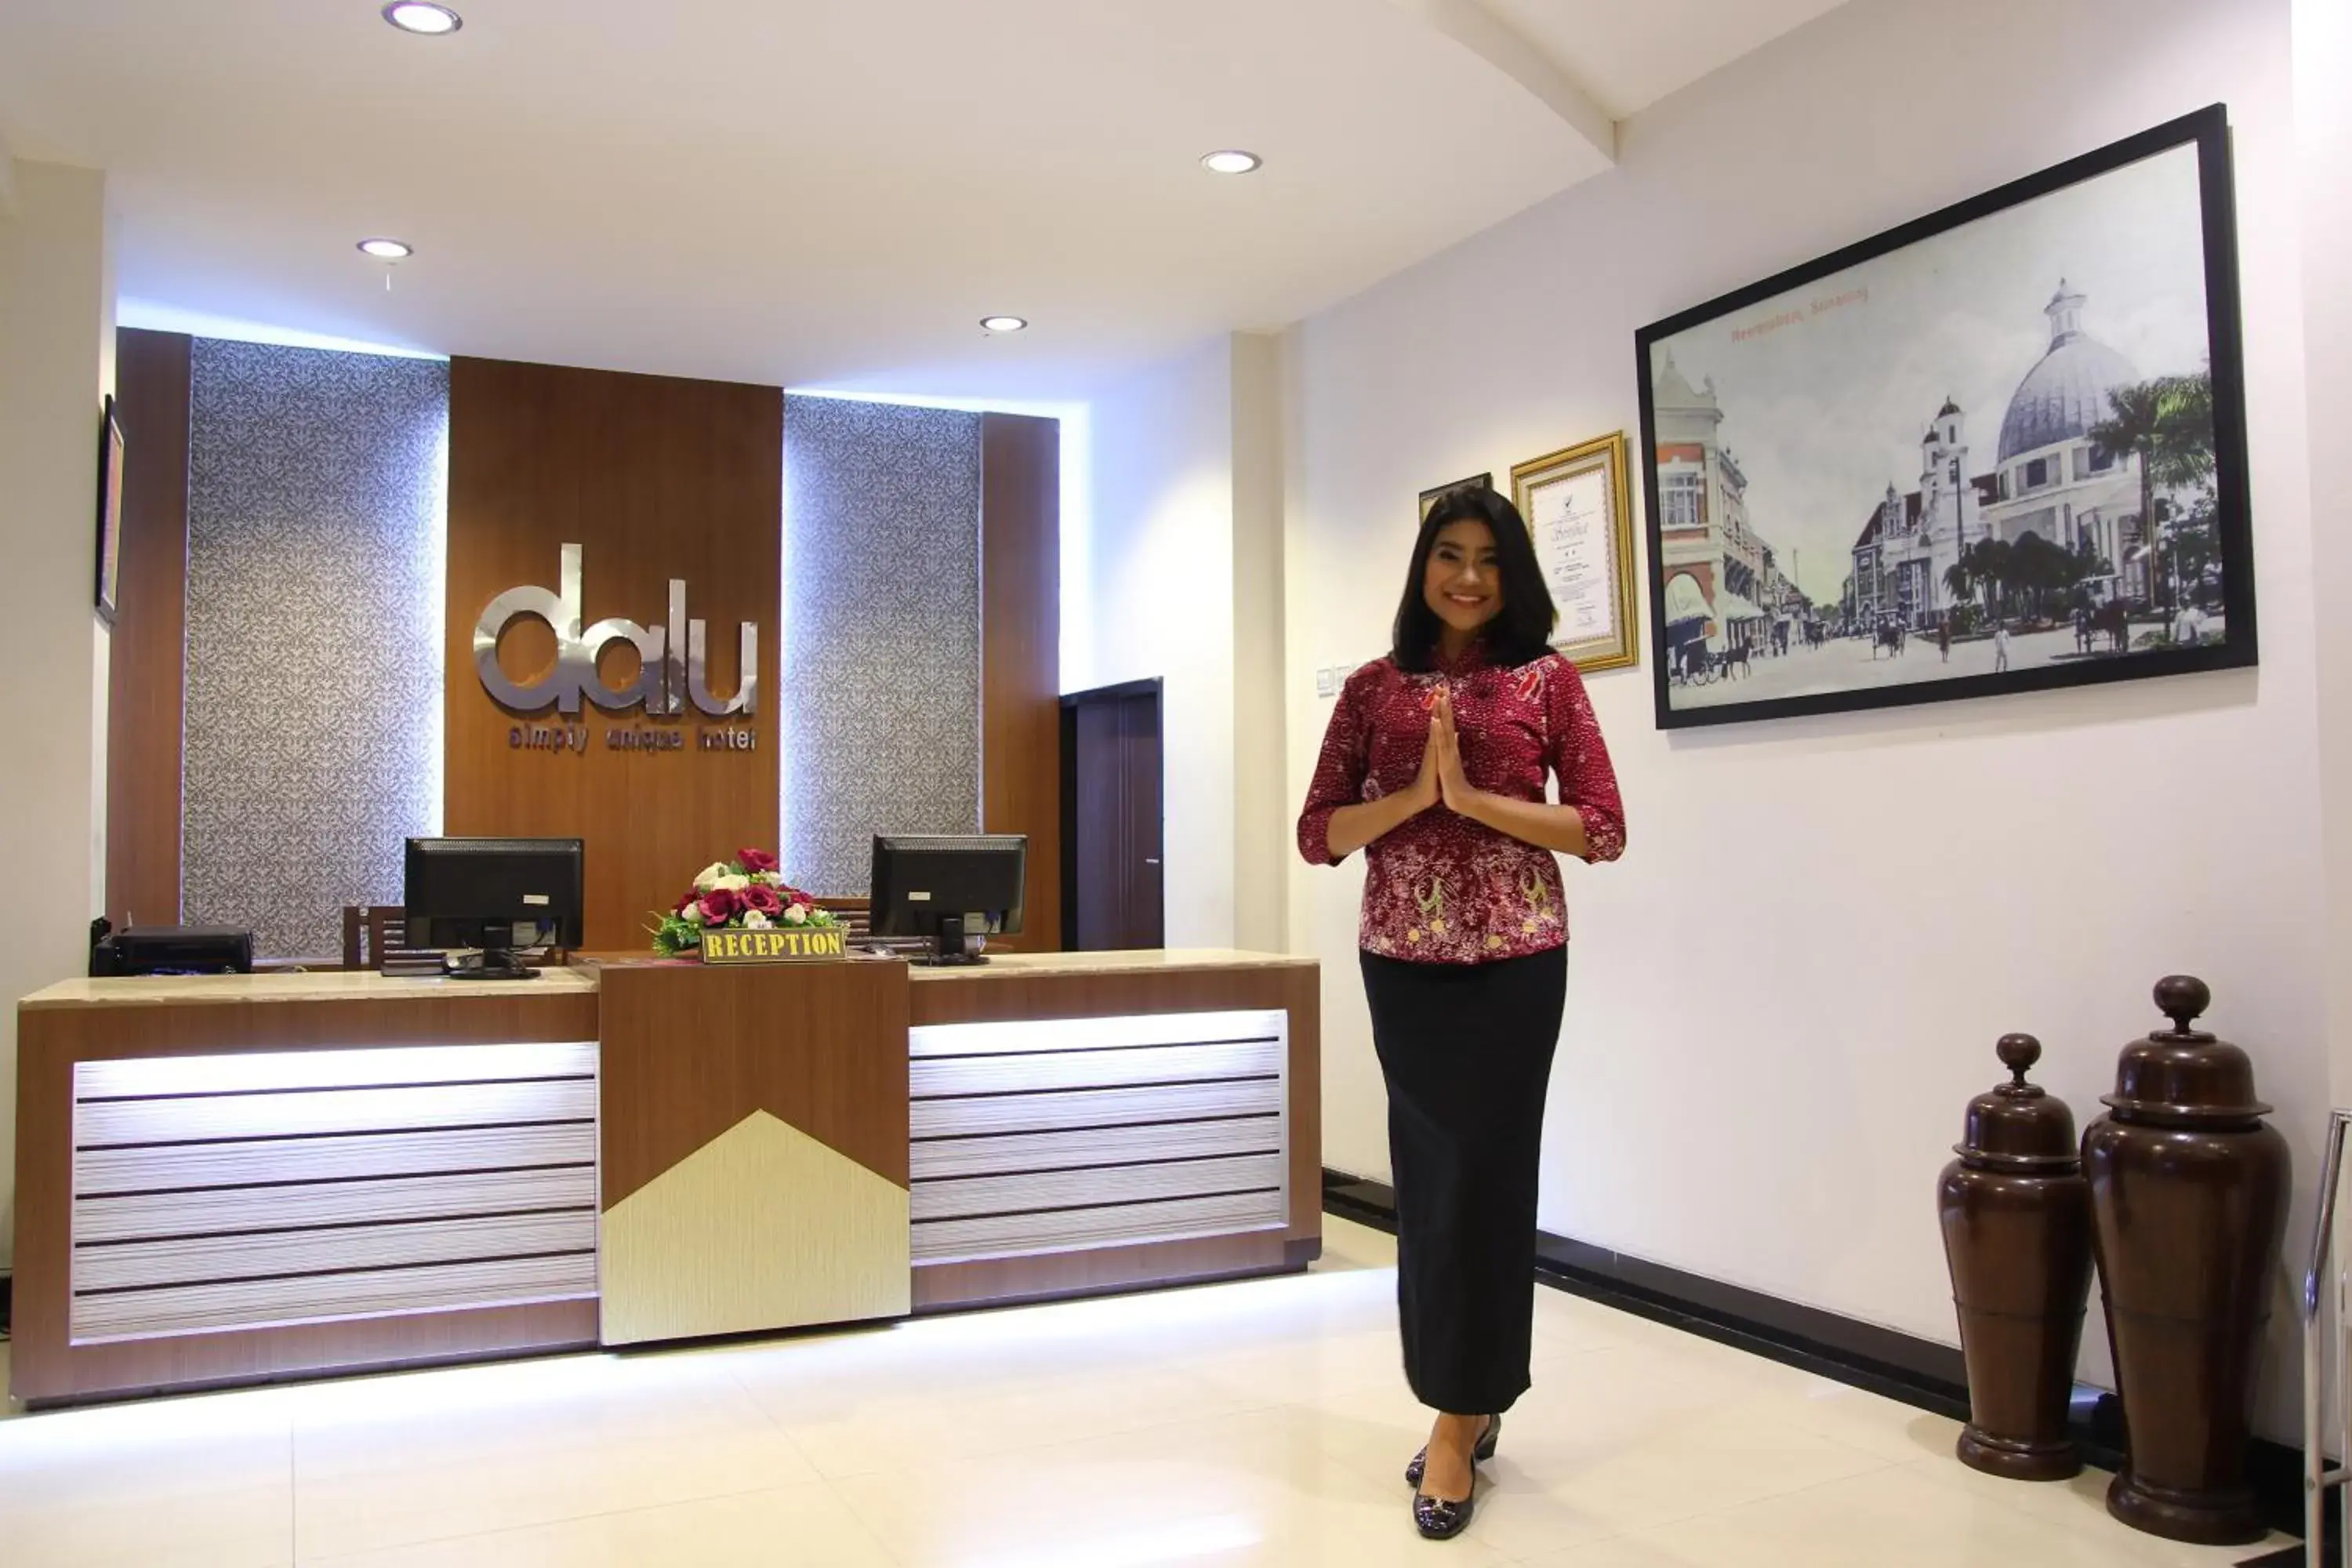 Lobby or reception in Dalu Hotel